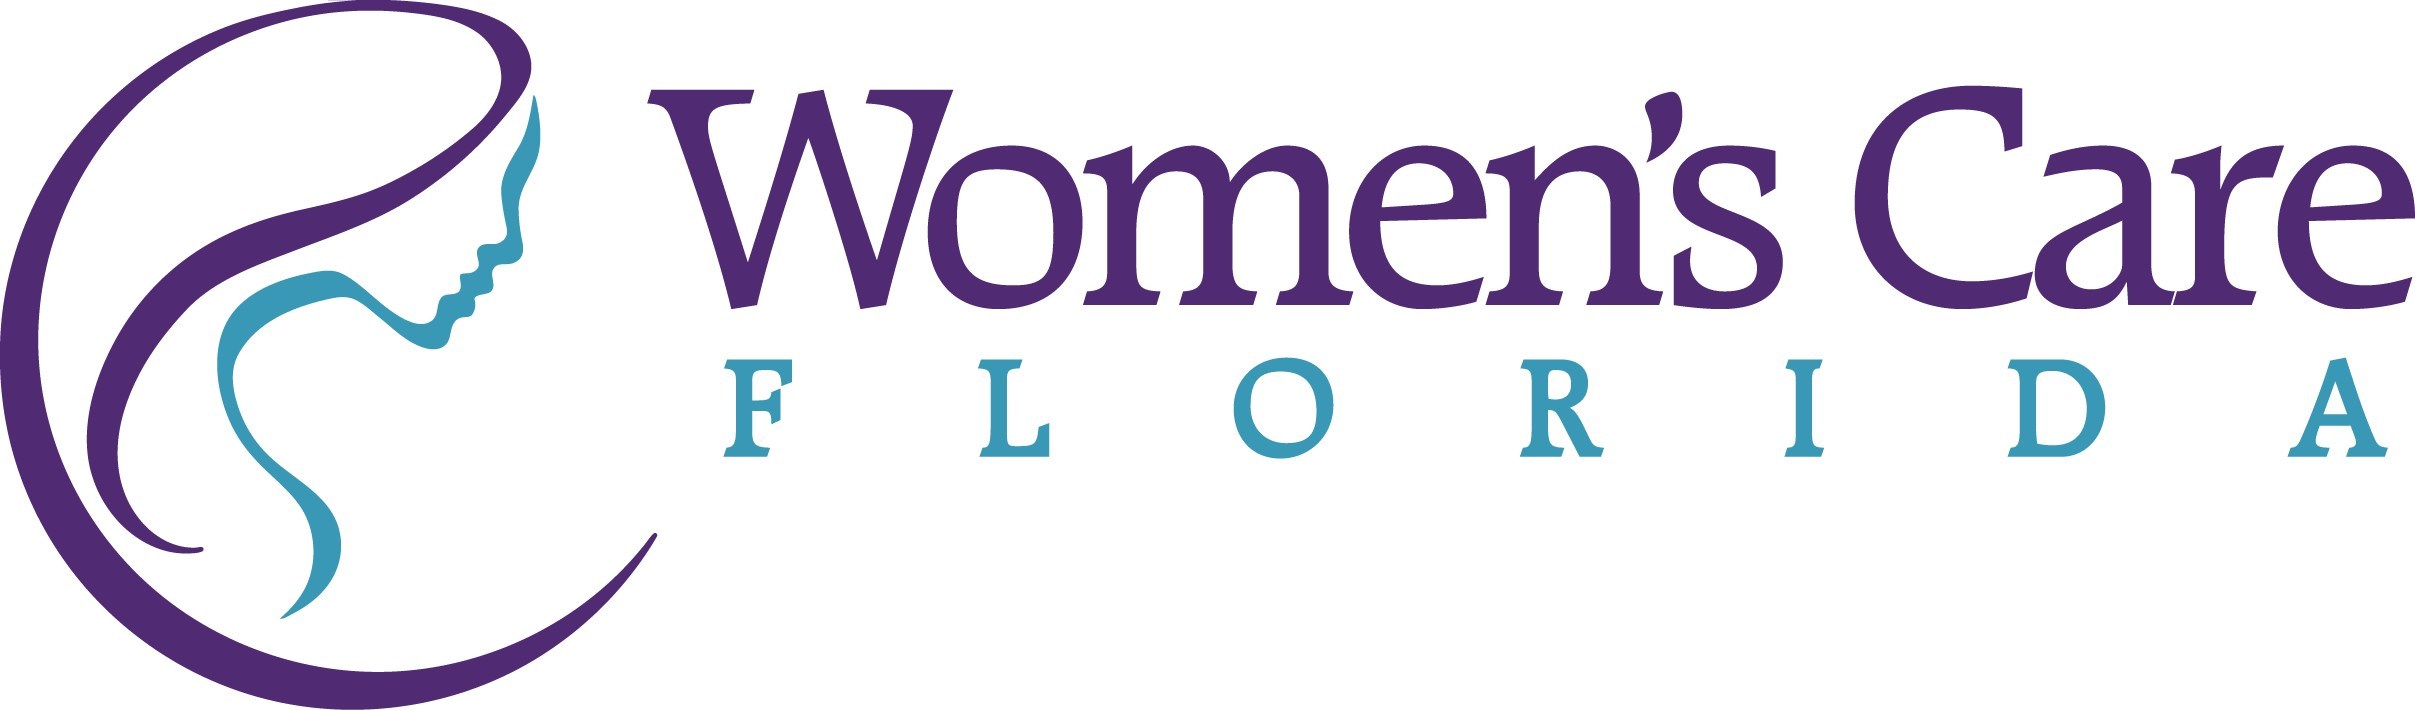 Womens Care Florida Logo